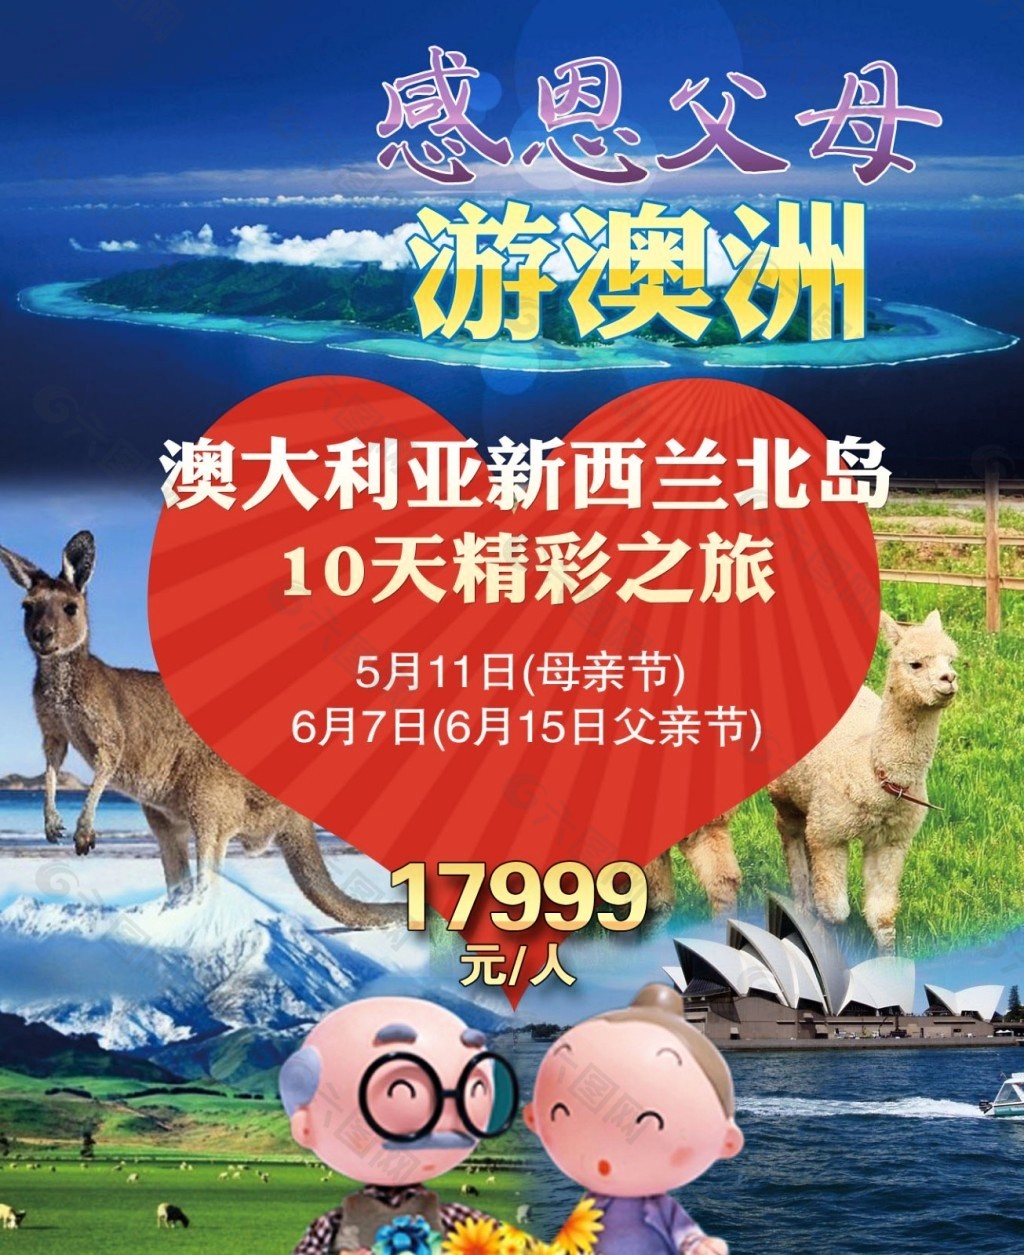 澳洲旅游广告